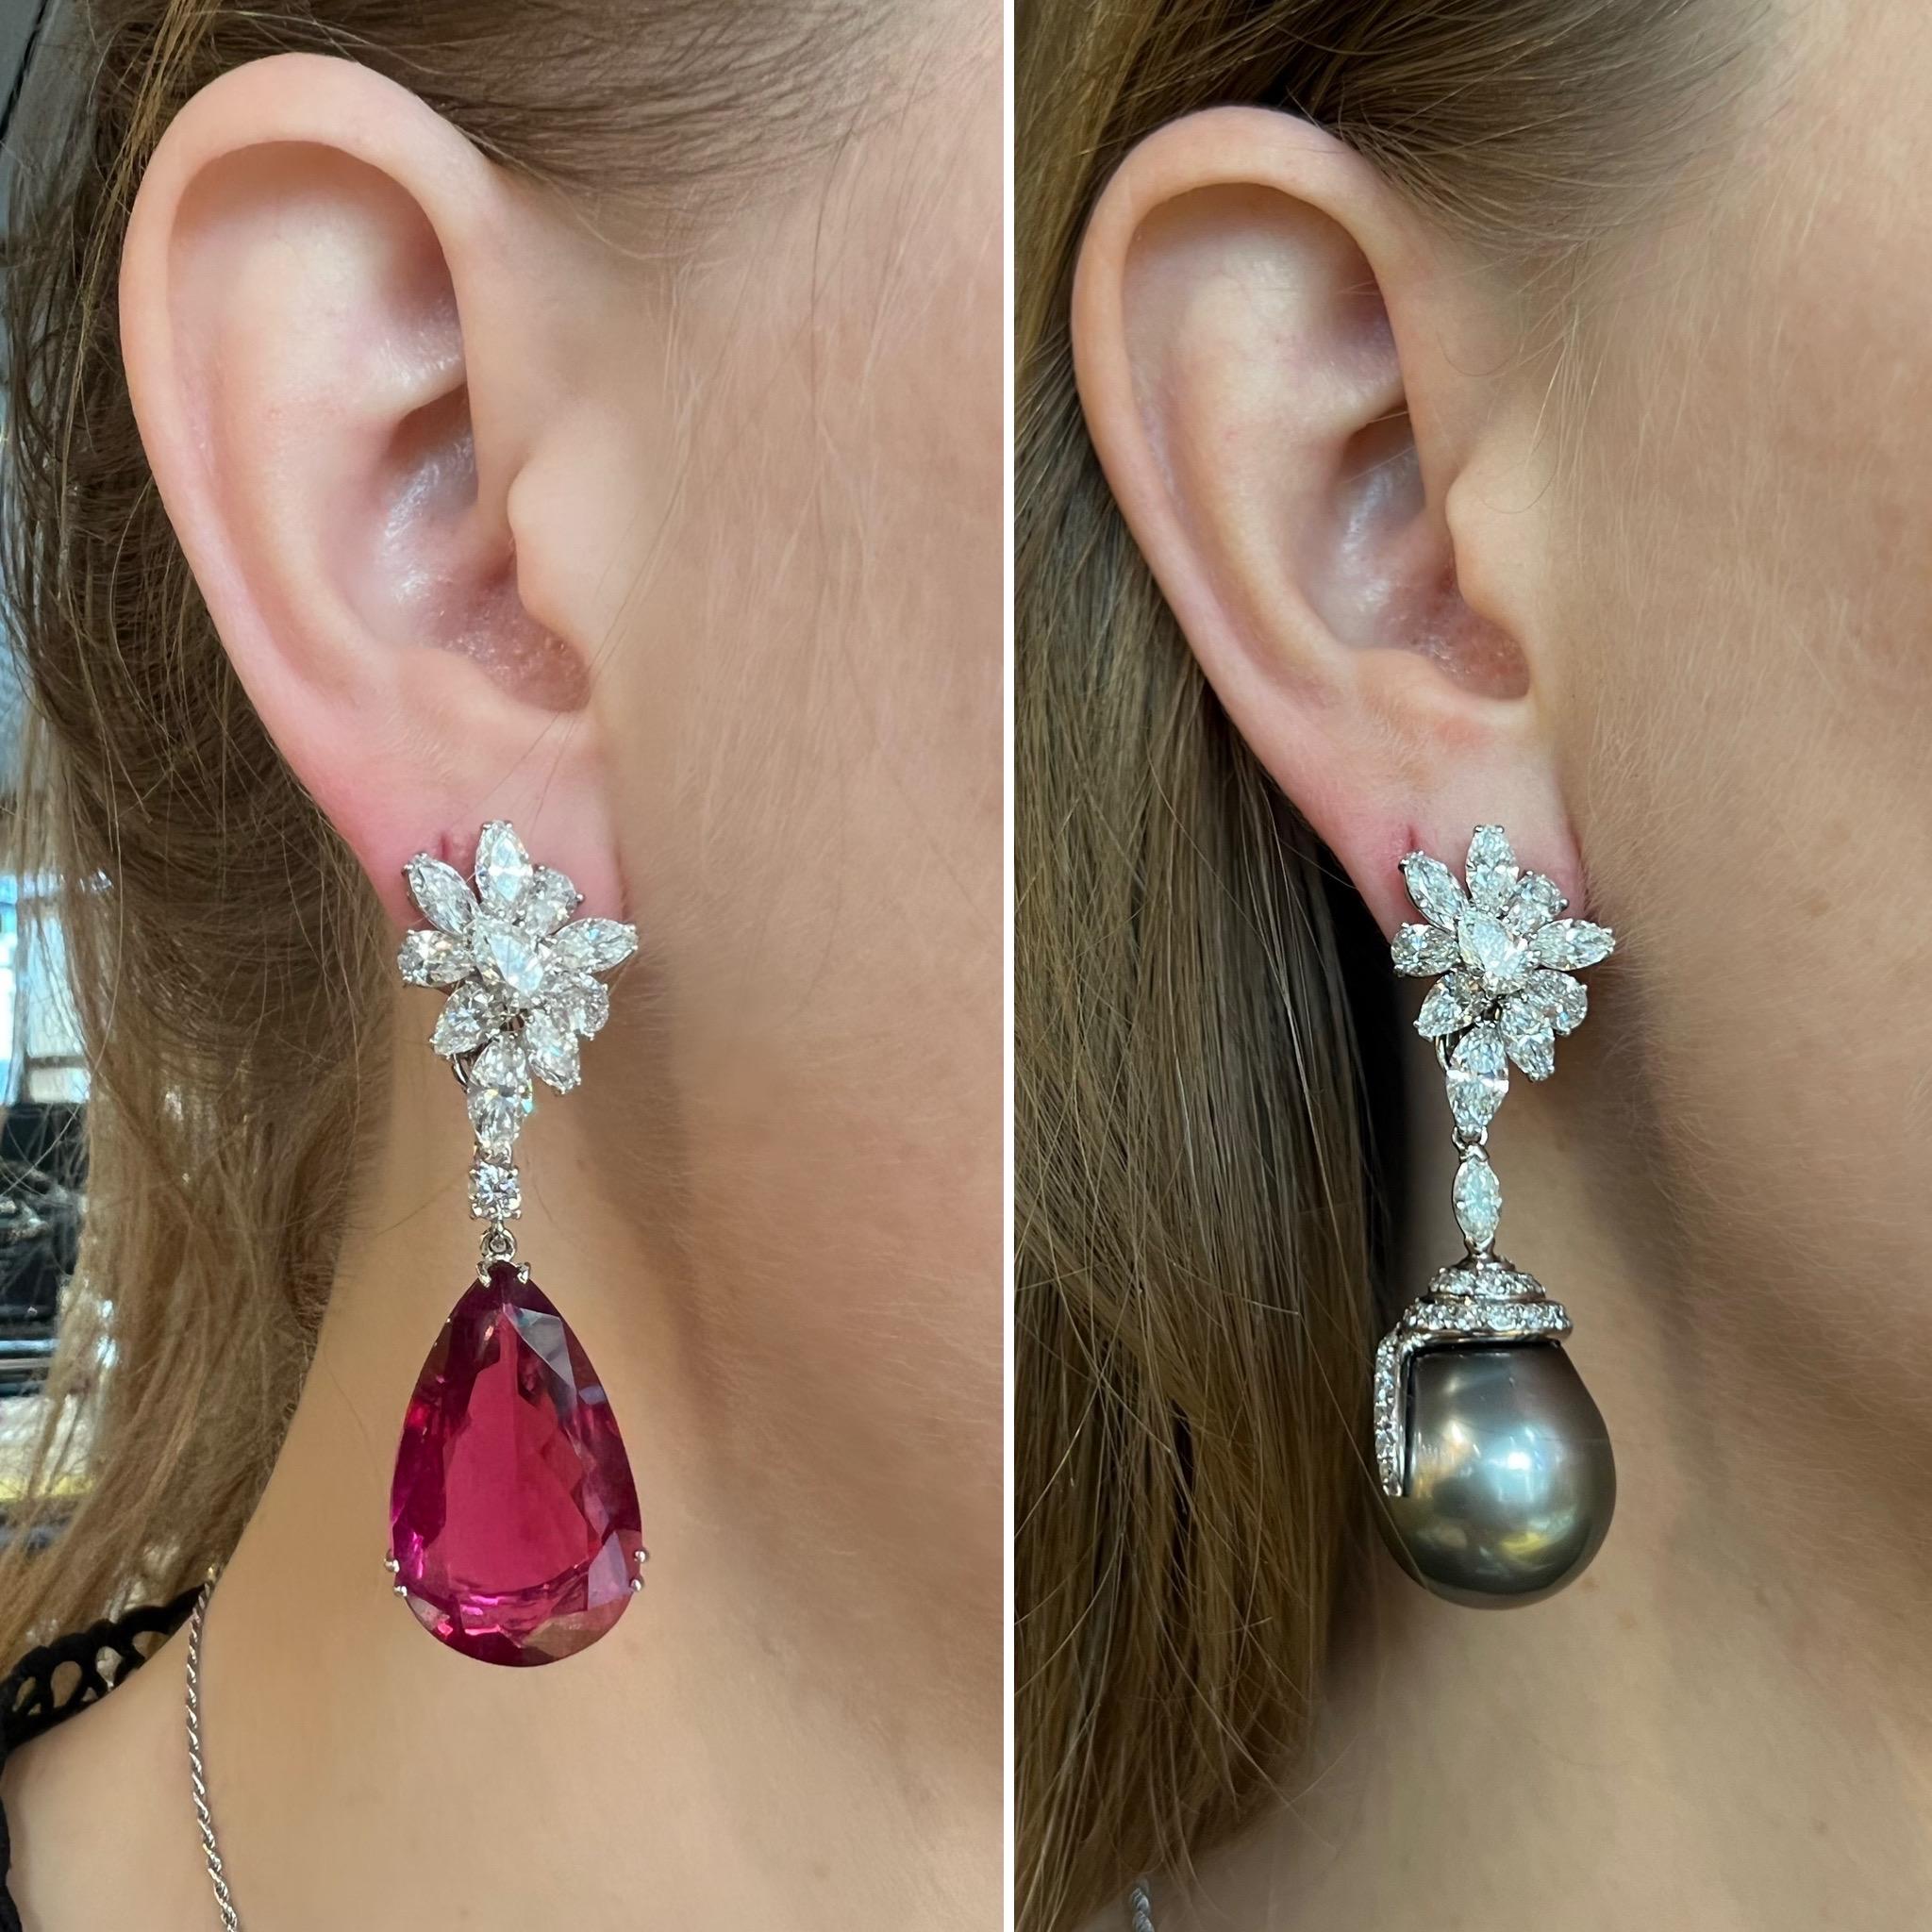 Dieses schöne Paar Ohrringe kann in 7 verschiedenen Kombinationen getragen werden.
Der obere Teil aus Weißgold, besetzt mit Diamanten im Birnen- und Marquise-Schliff, kann allein stehen.

Der obere Teil hat ein System , das Sie auf Ihre